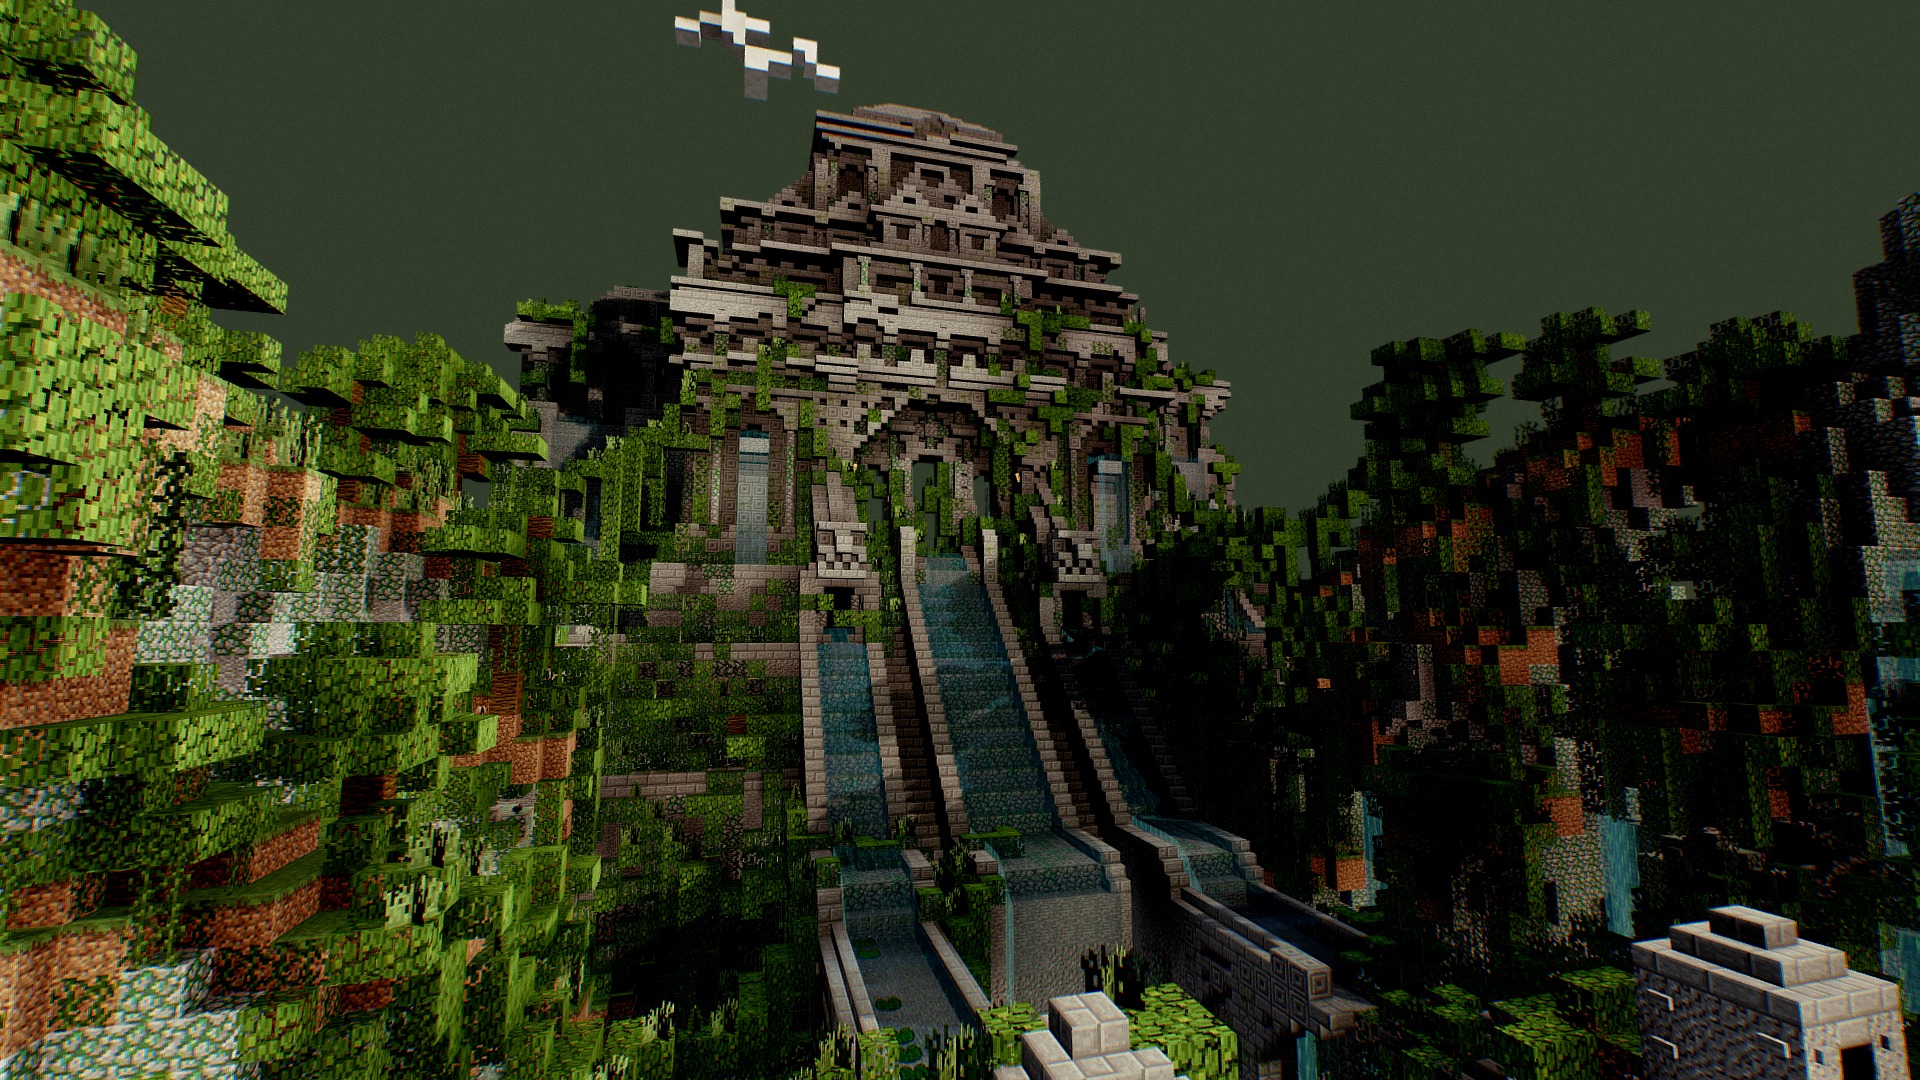 Minecraft jungles. Джунглевый храм в майнкрафт. Храм в джунглях в майнкрафт. Биом джунгли в майнкрафт. Майнкрафт 1.3.1 храм джунглей.